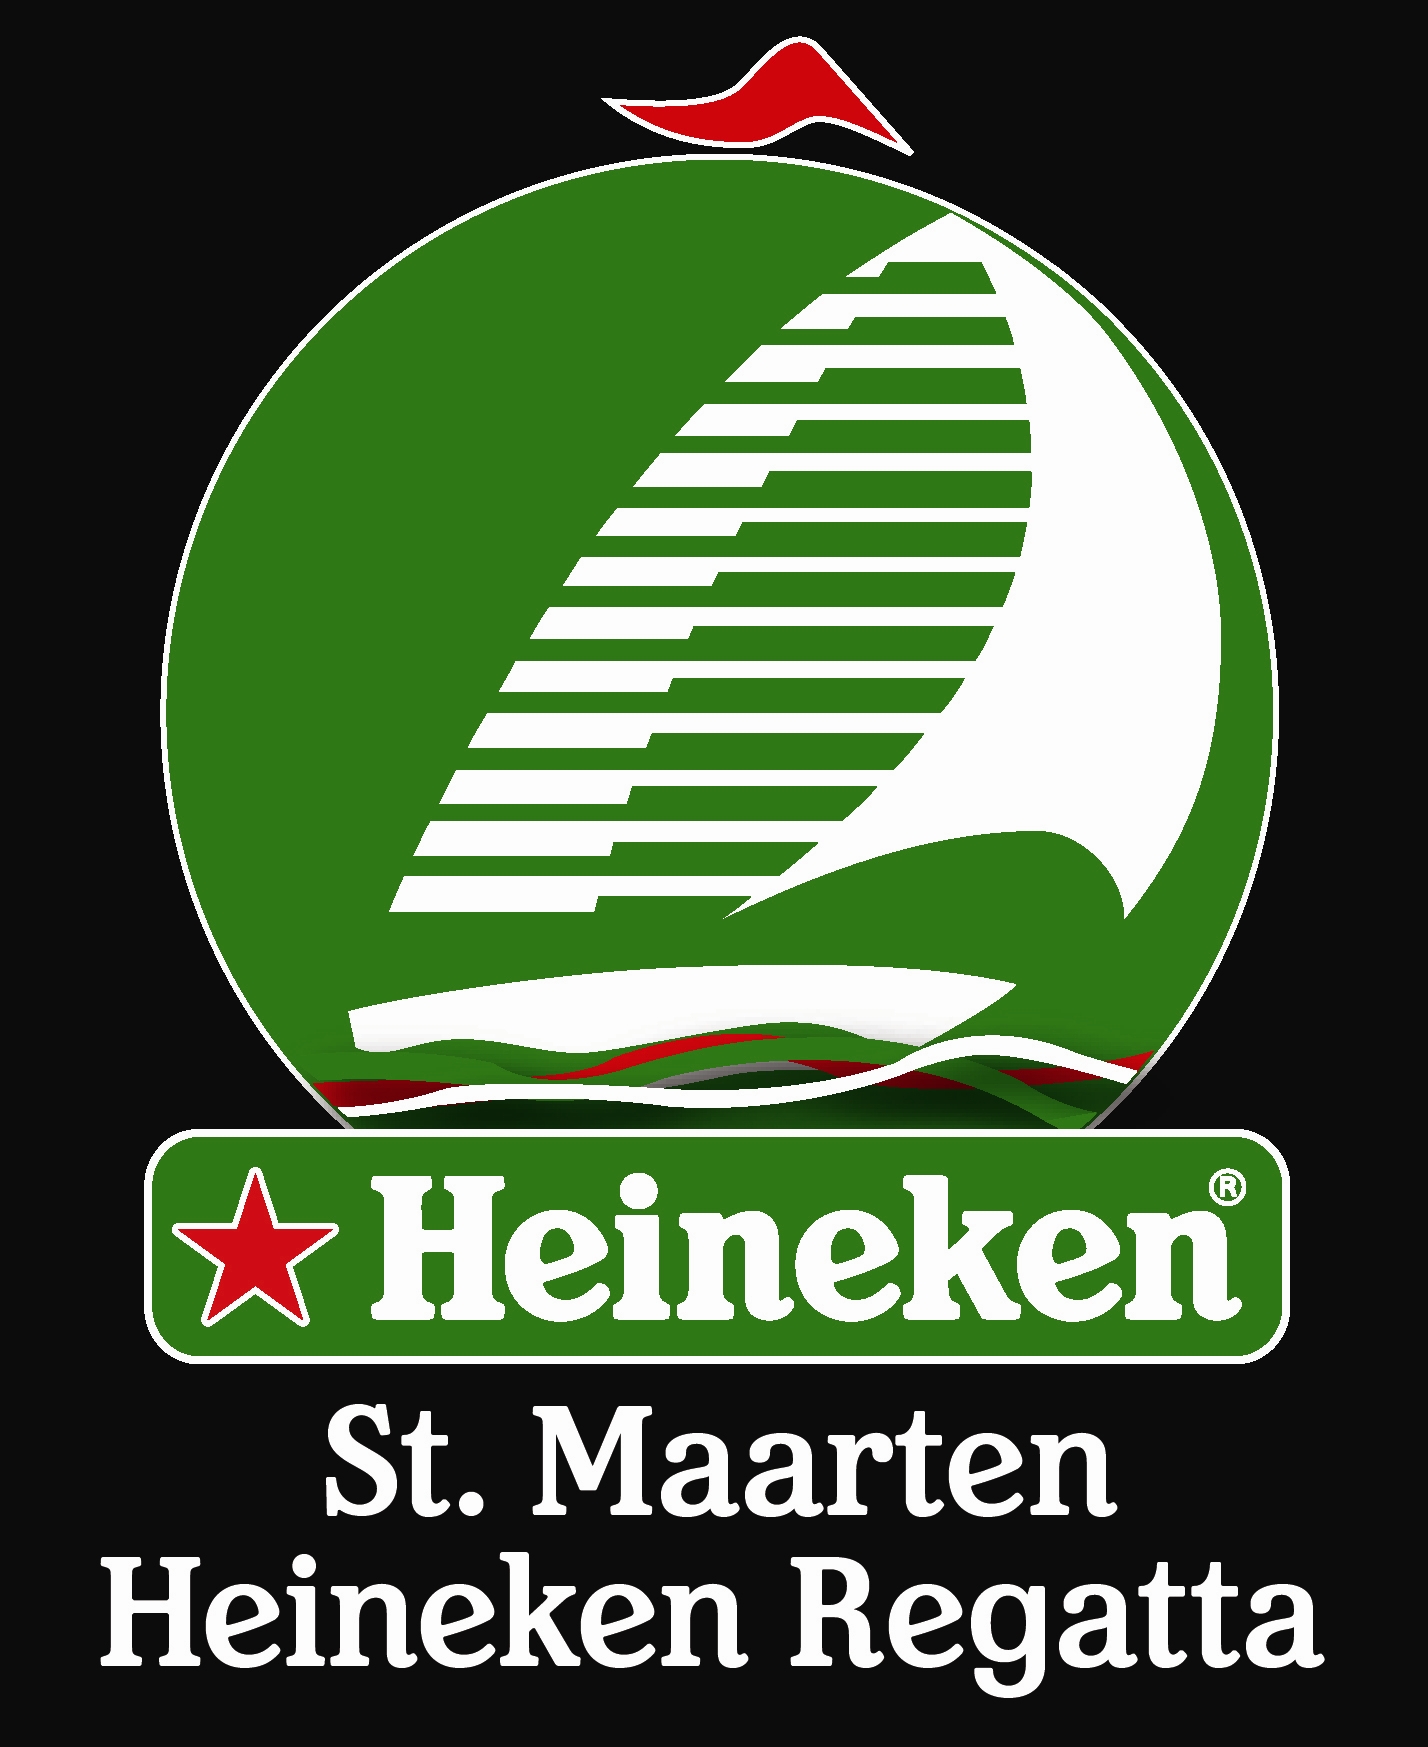 Heineken_Regatta_logo_black